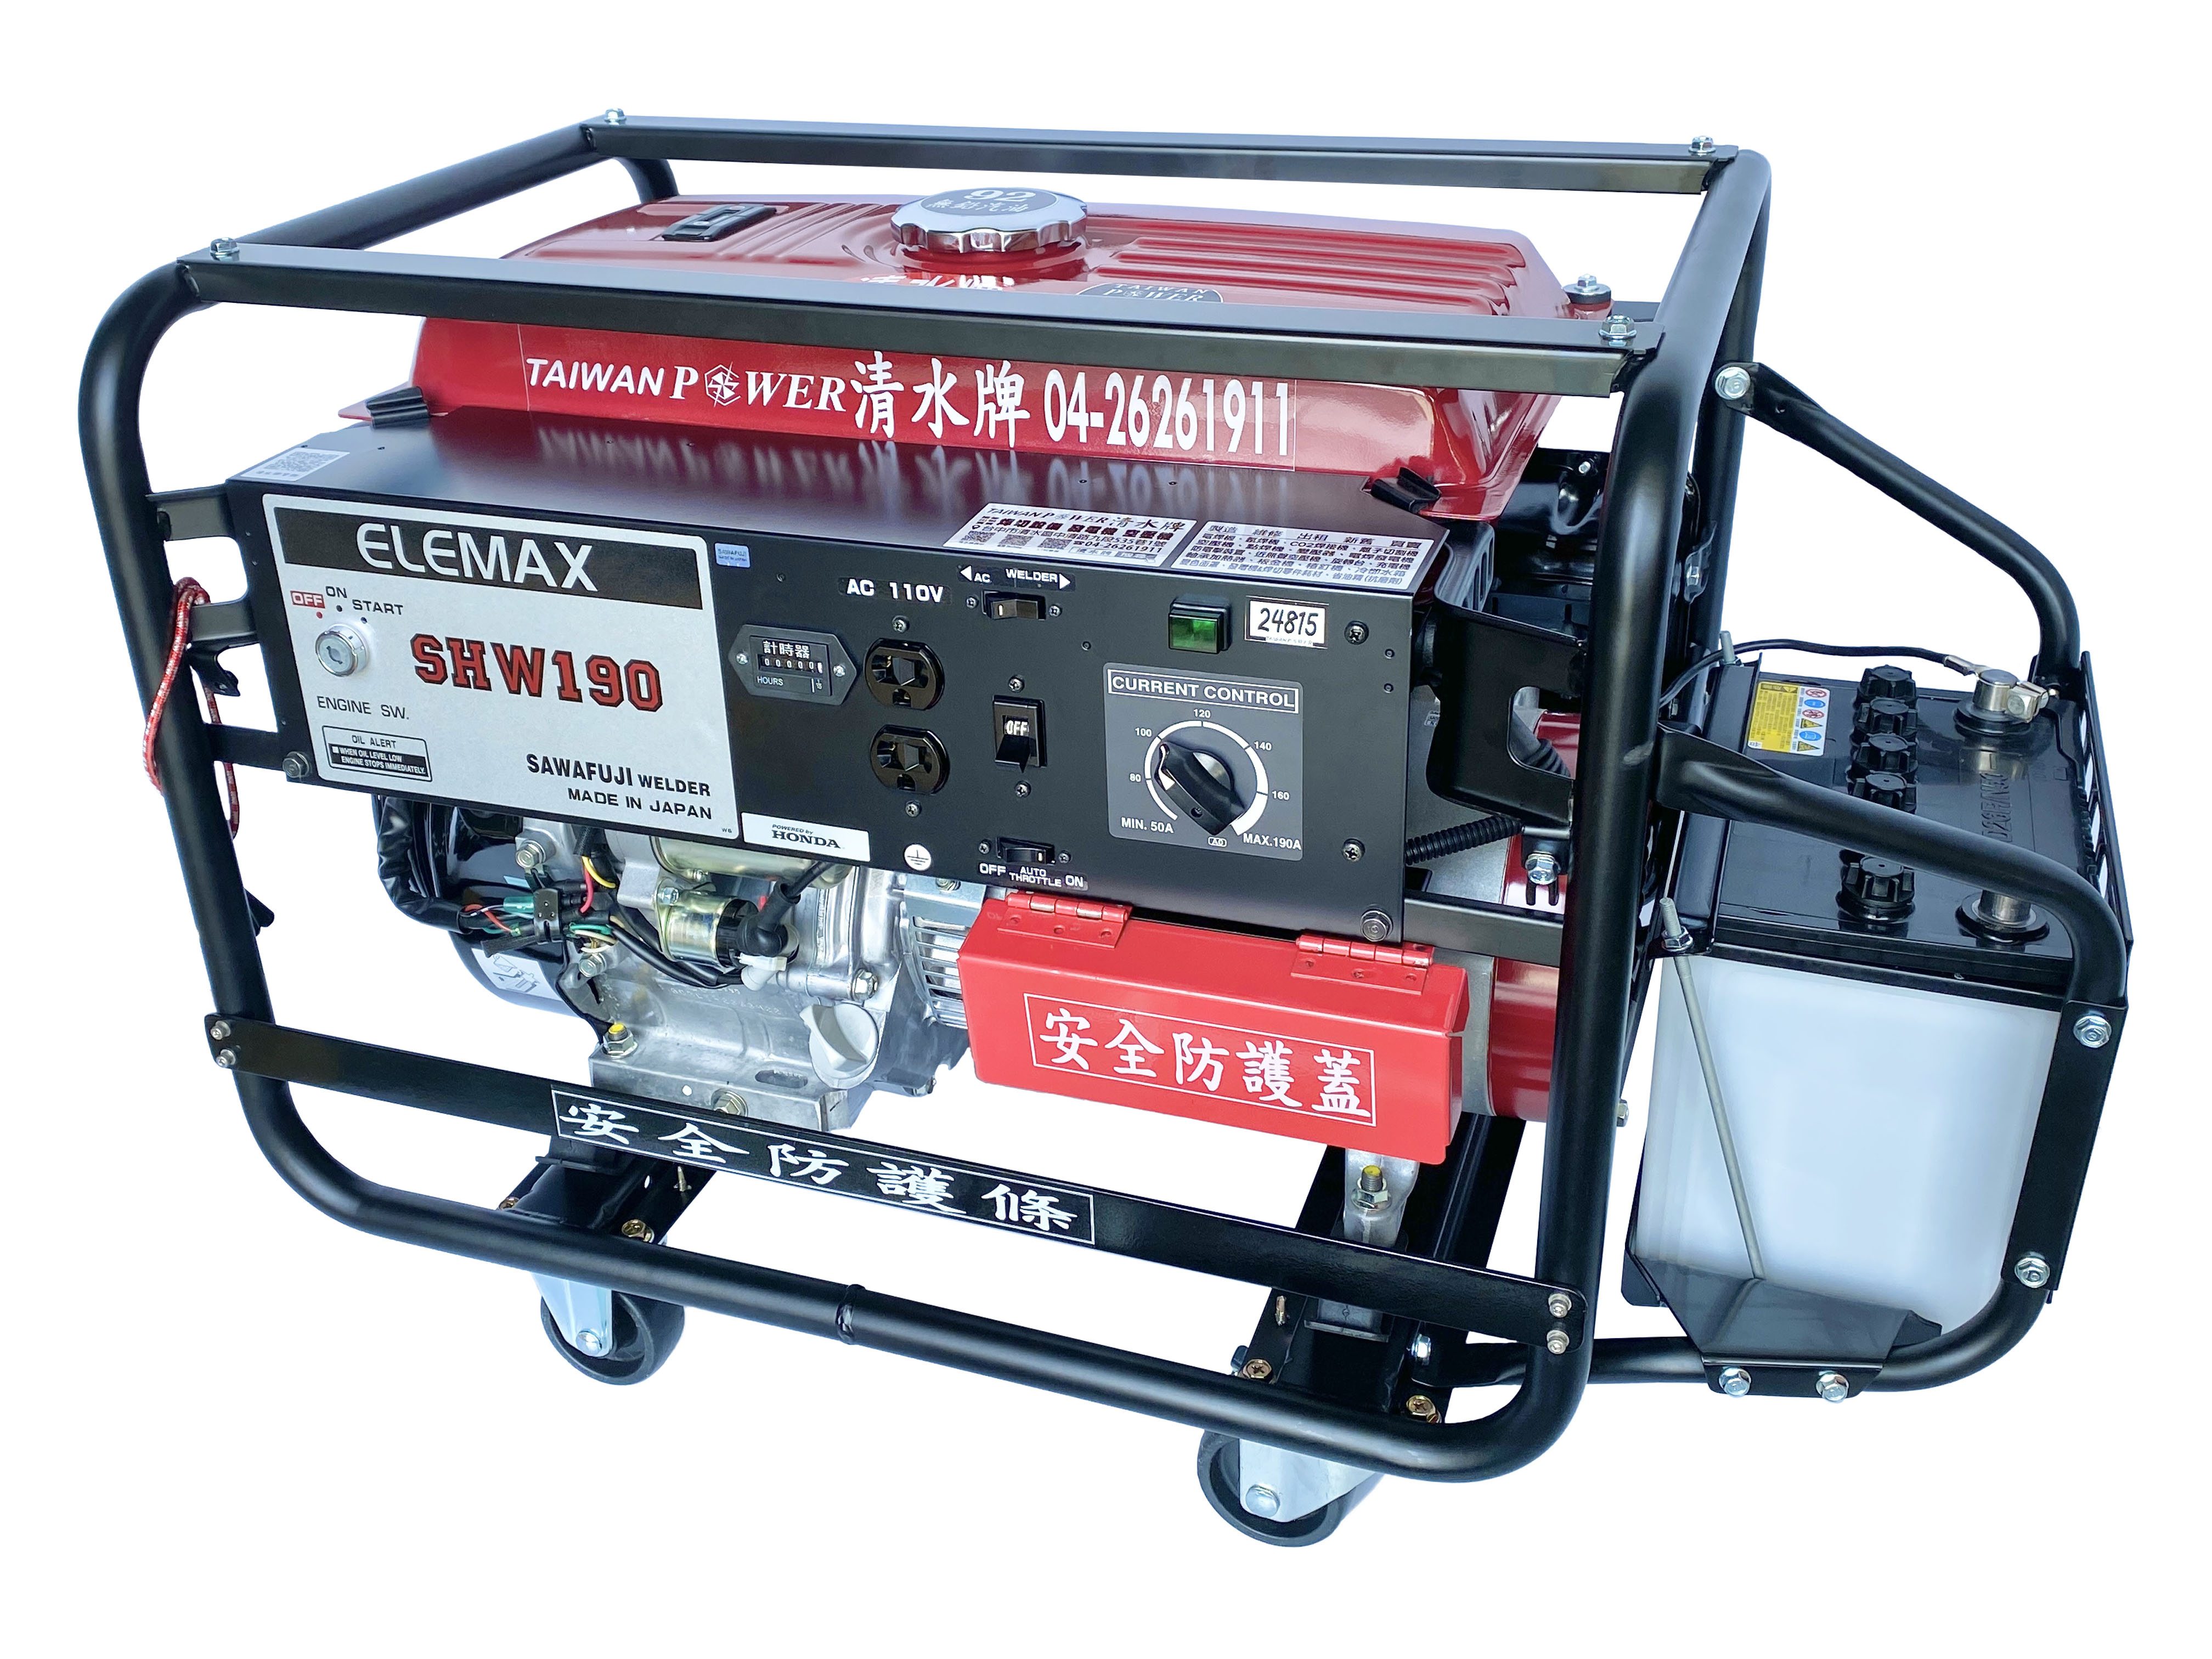 TAIWAN POWER】清水牌ELEMAX SHW190手動鑰匙啟動電焊發電機- 產品資料 